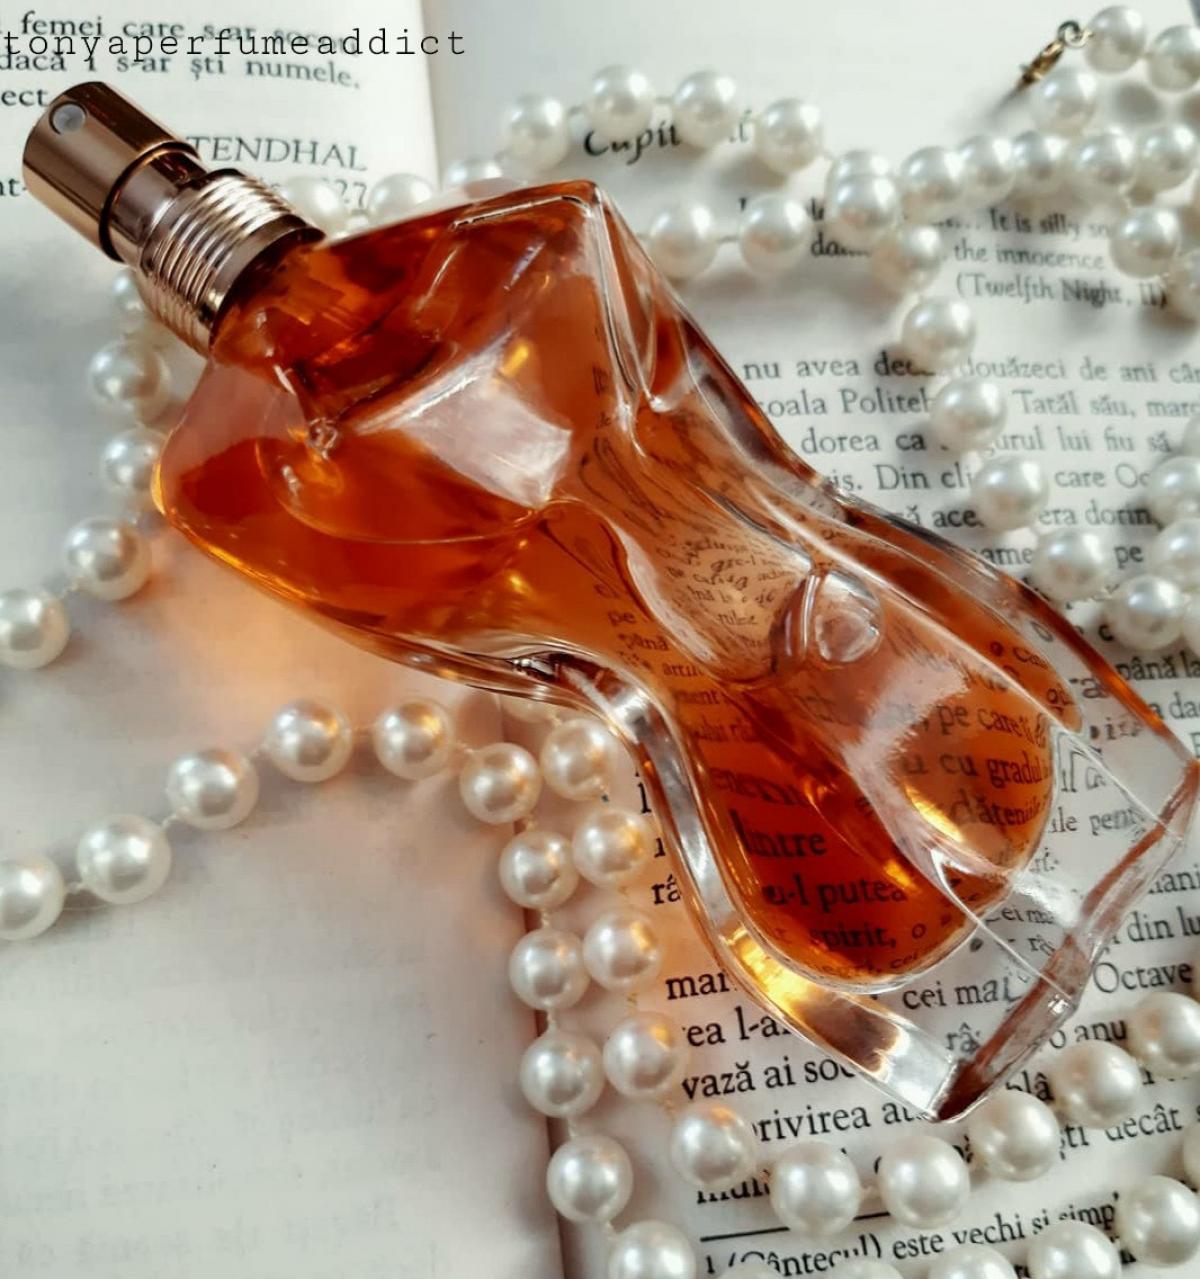 Classique Essence De Parfum Jean Paul Gaultier